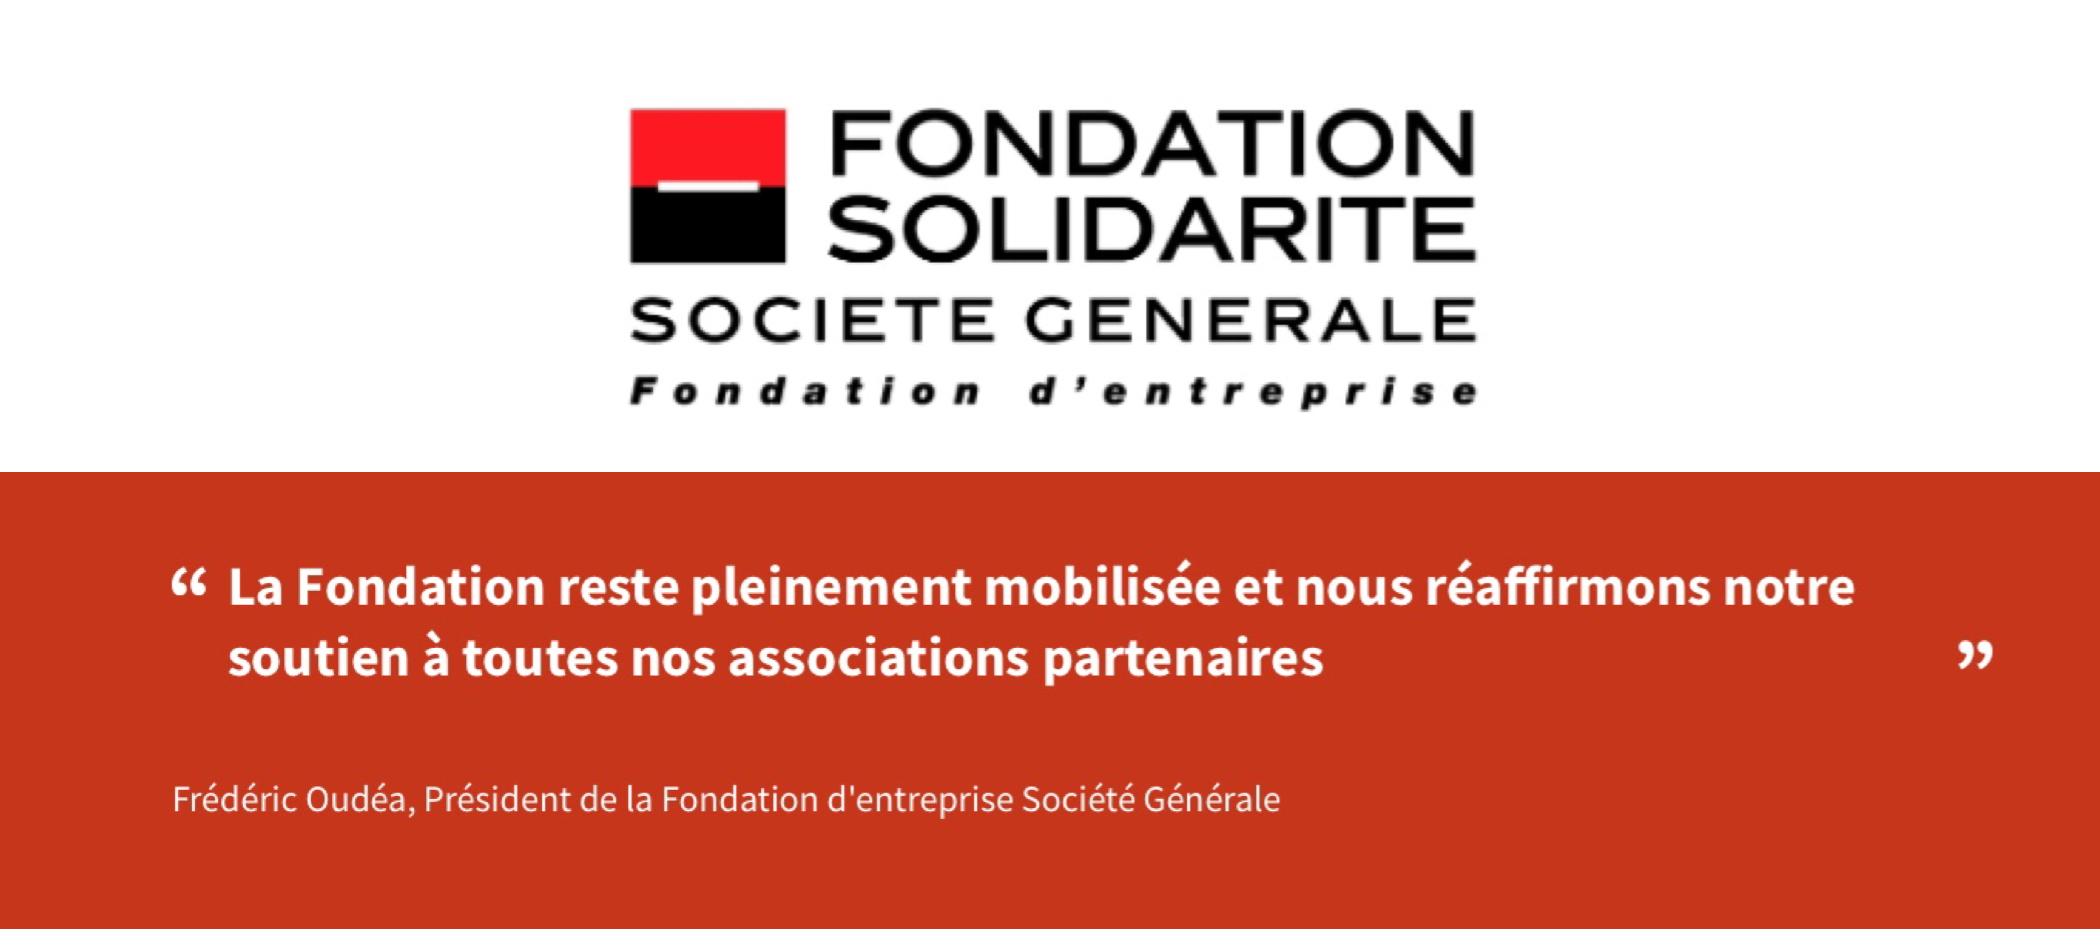 Fondation solidarité – Société générale : un appel à projet sous le signe de la reconstruction